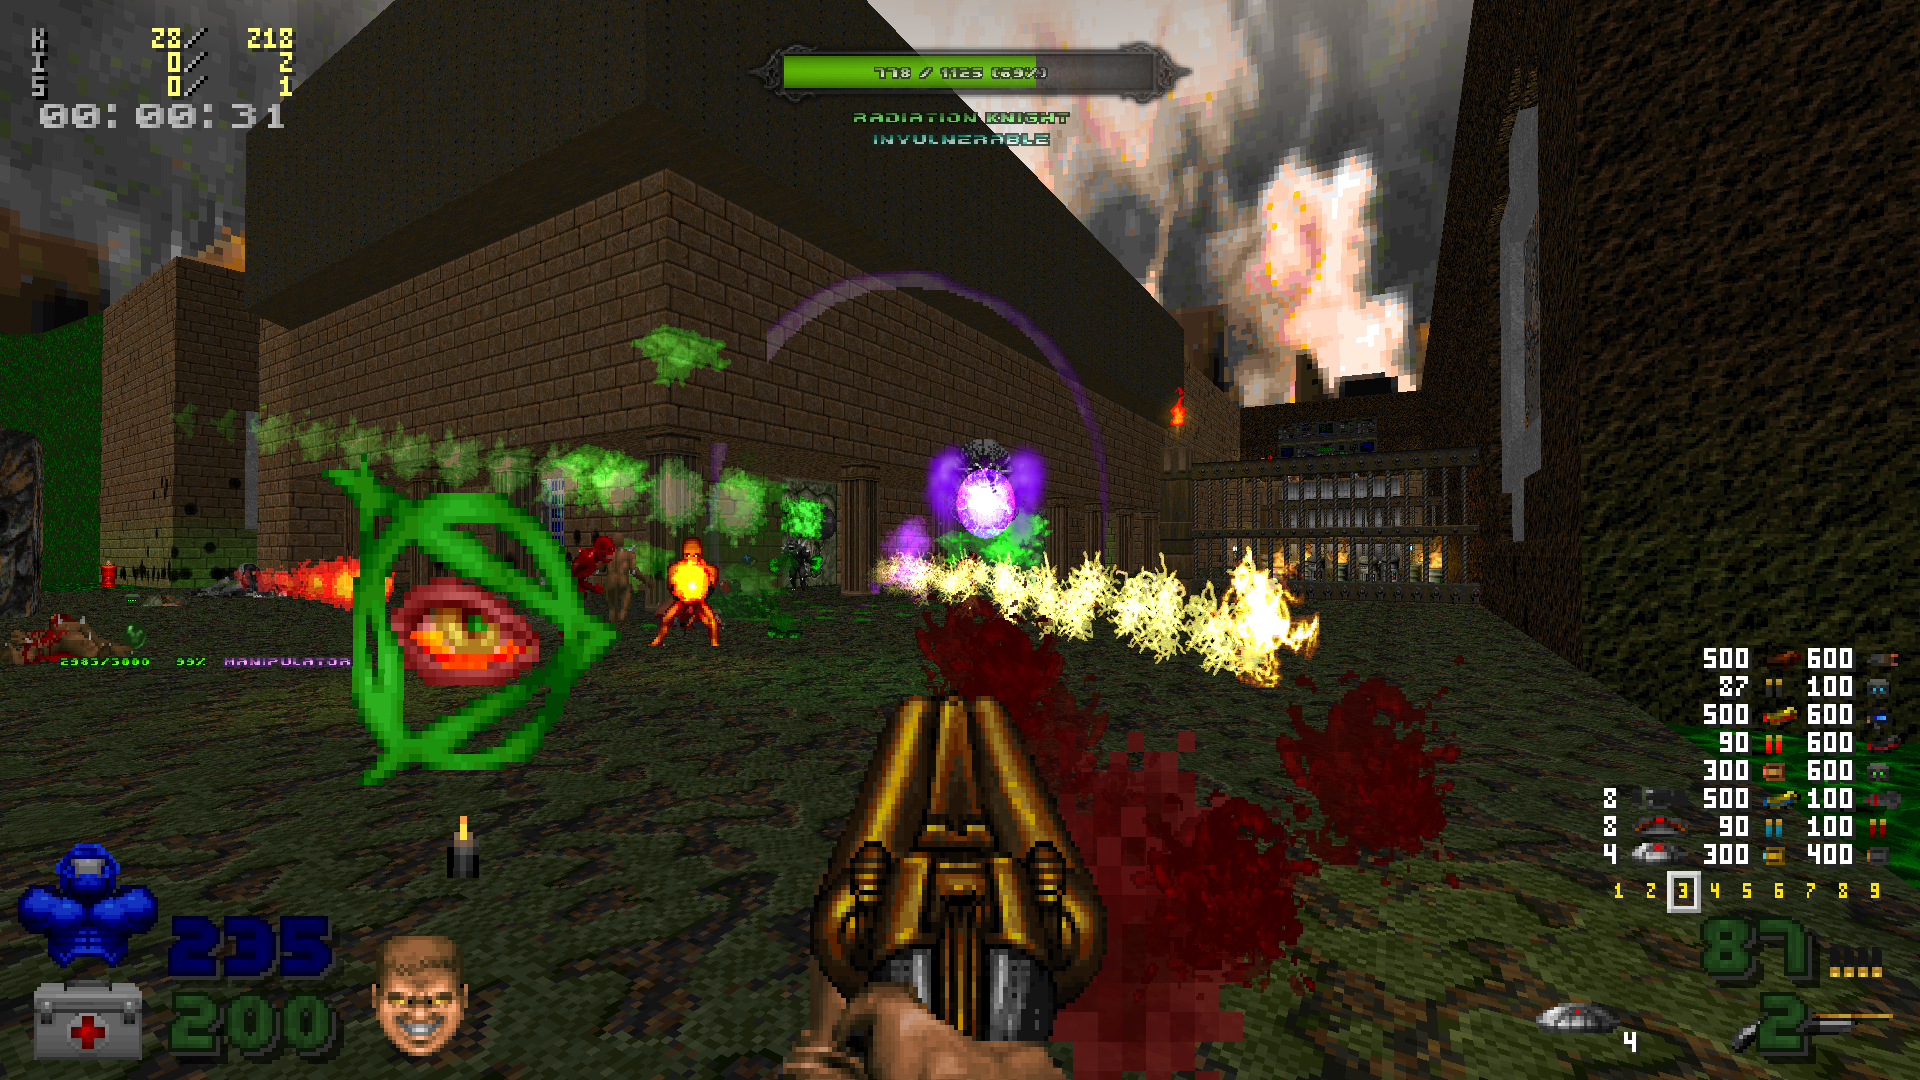 Image 7 - Complex Doom: Clusterfuck mod for Doom II.